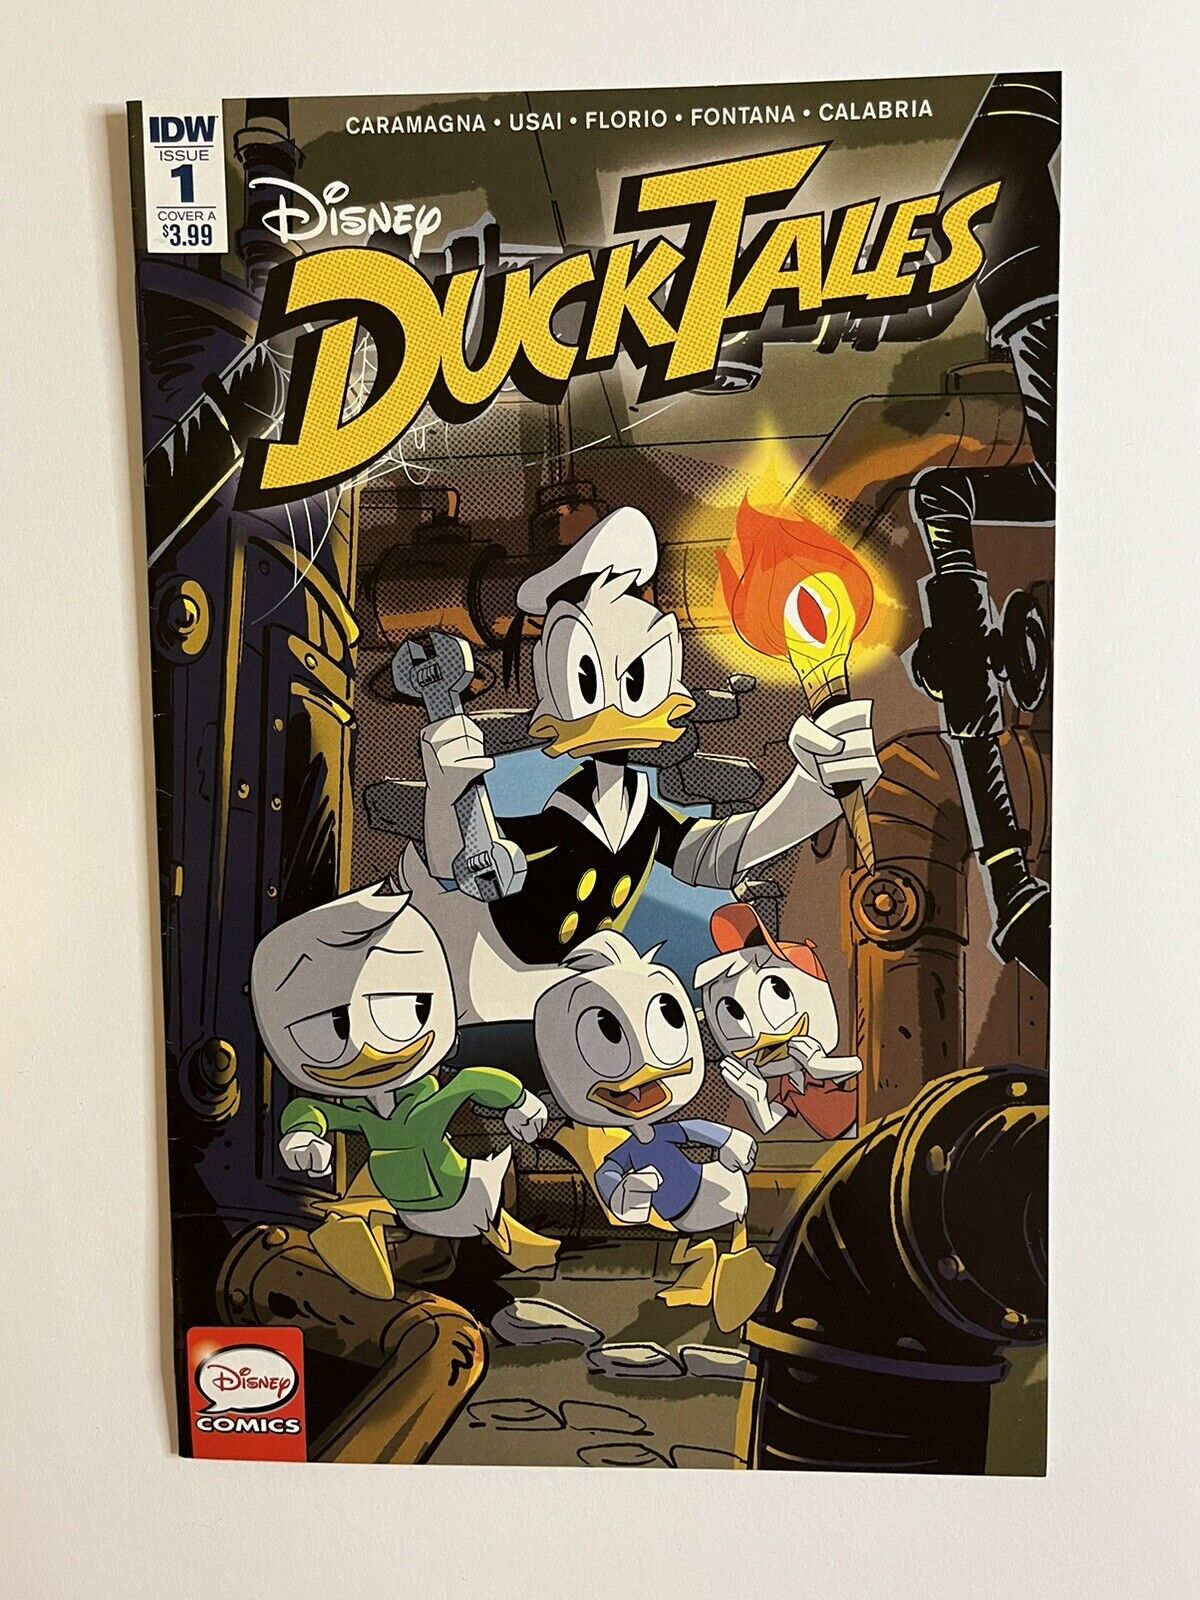 DuckTales #1 IDW Cover A Disney Comics